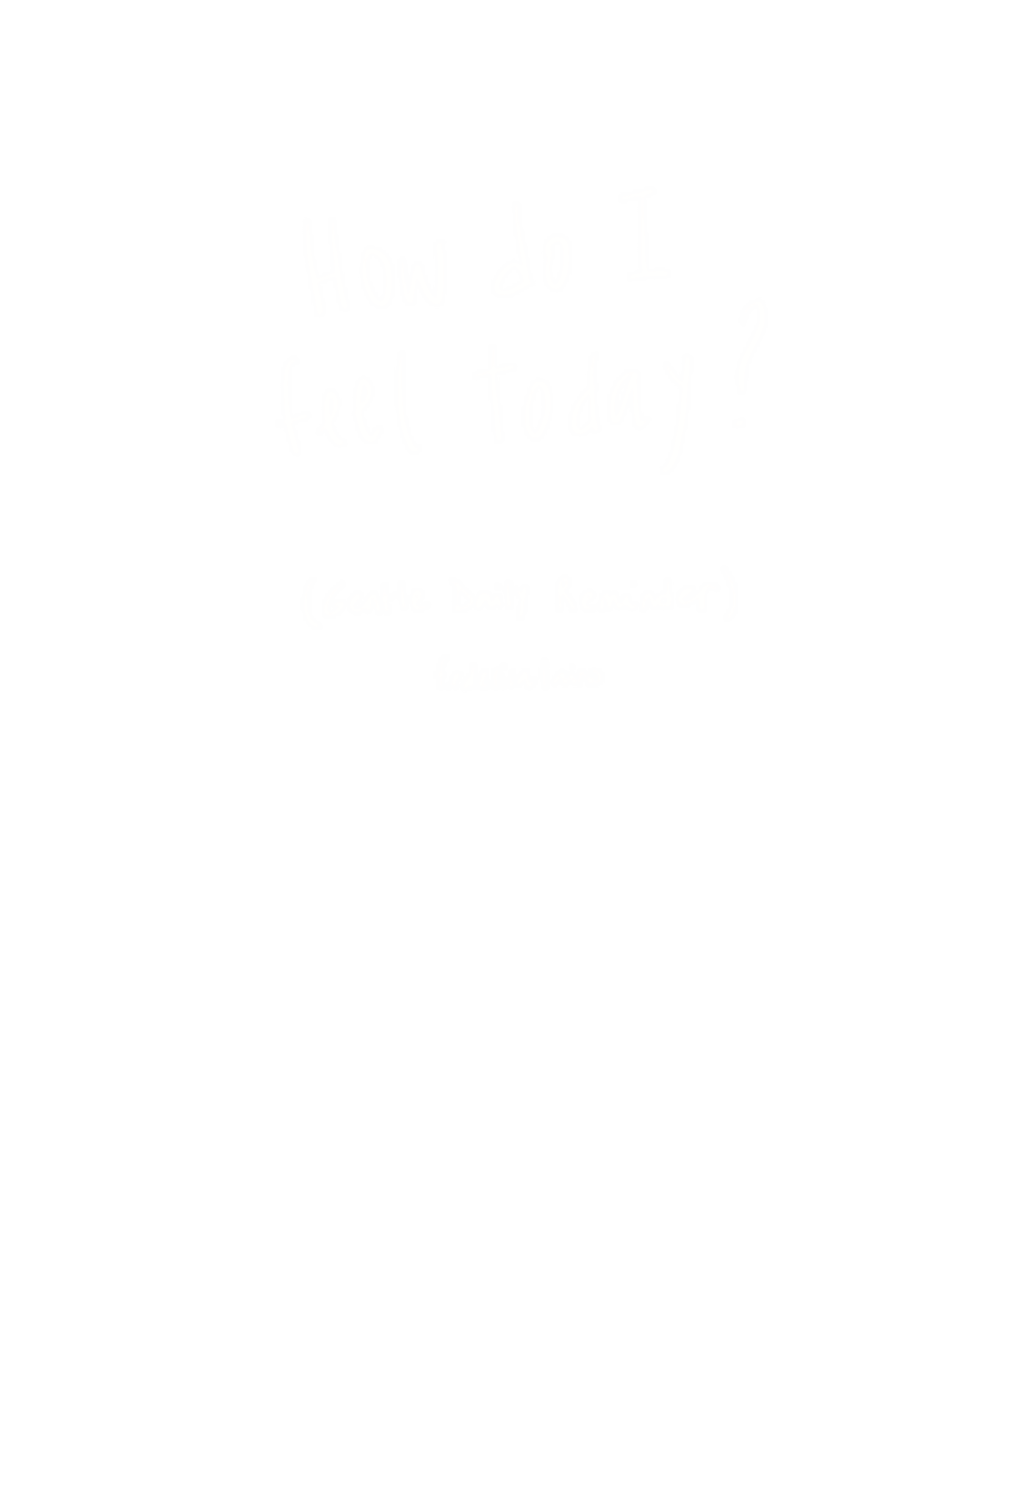 How do I feel today?